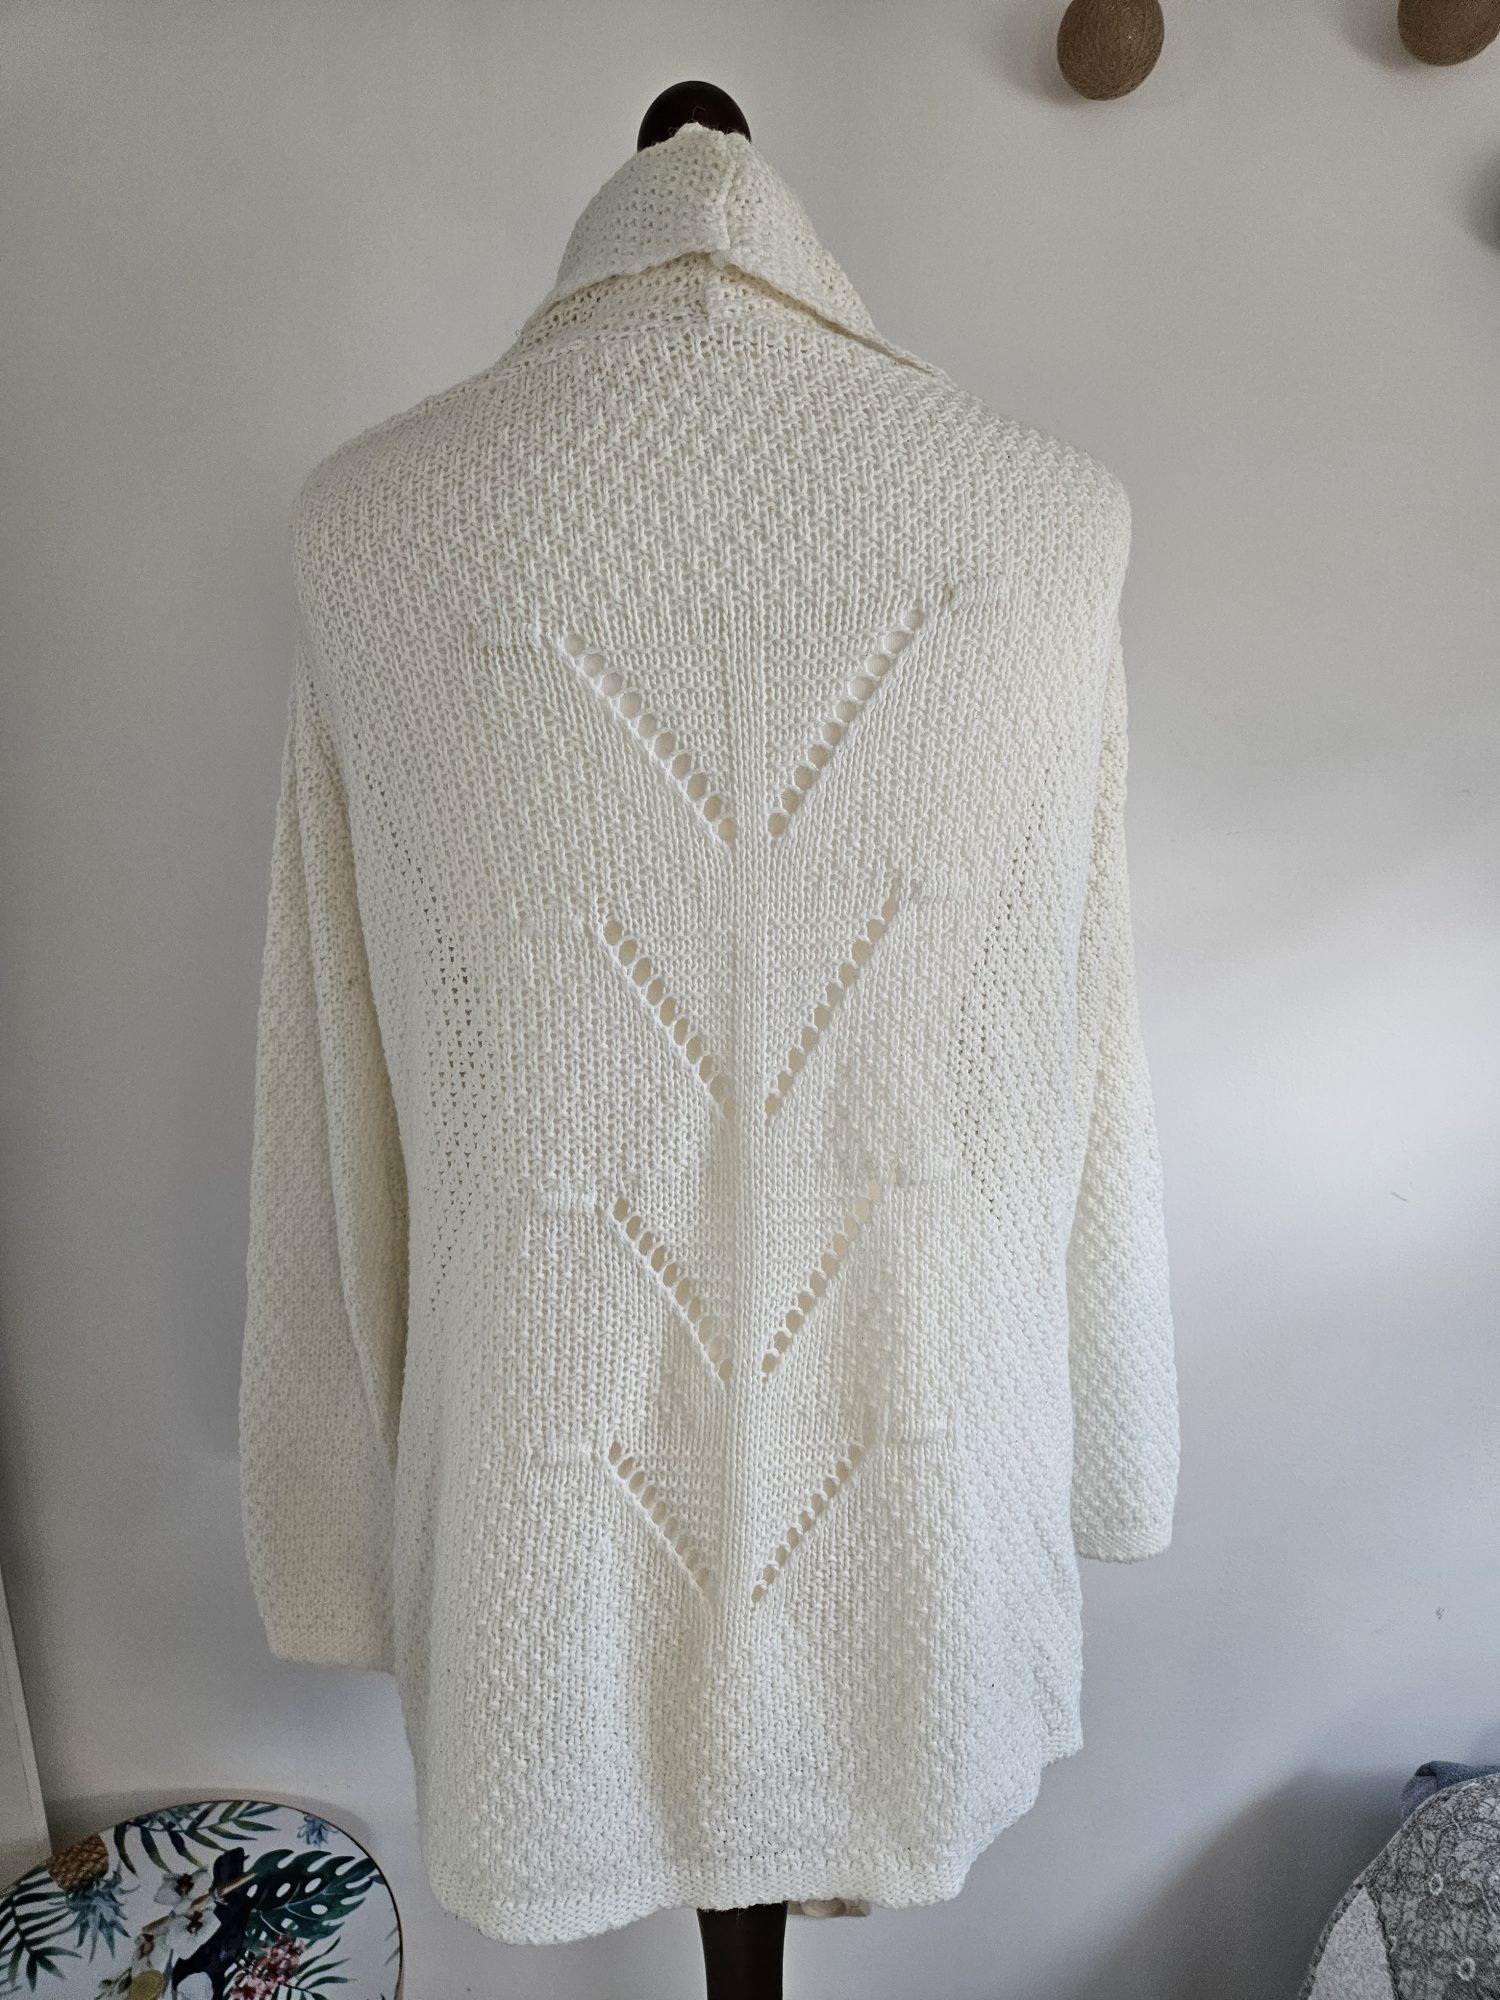 Sweter, narzutka, kardigan jasny kremowy/ ecru rozmiar 36-38